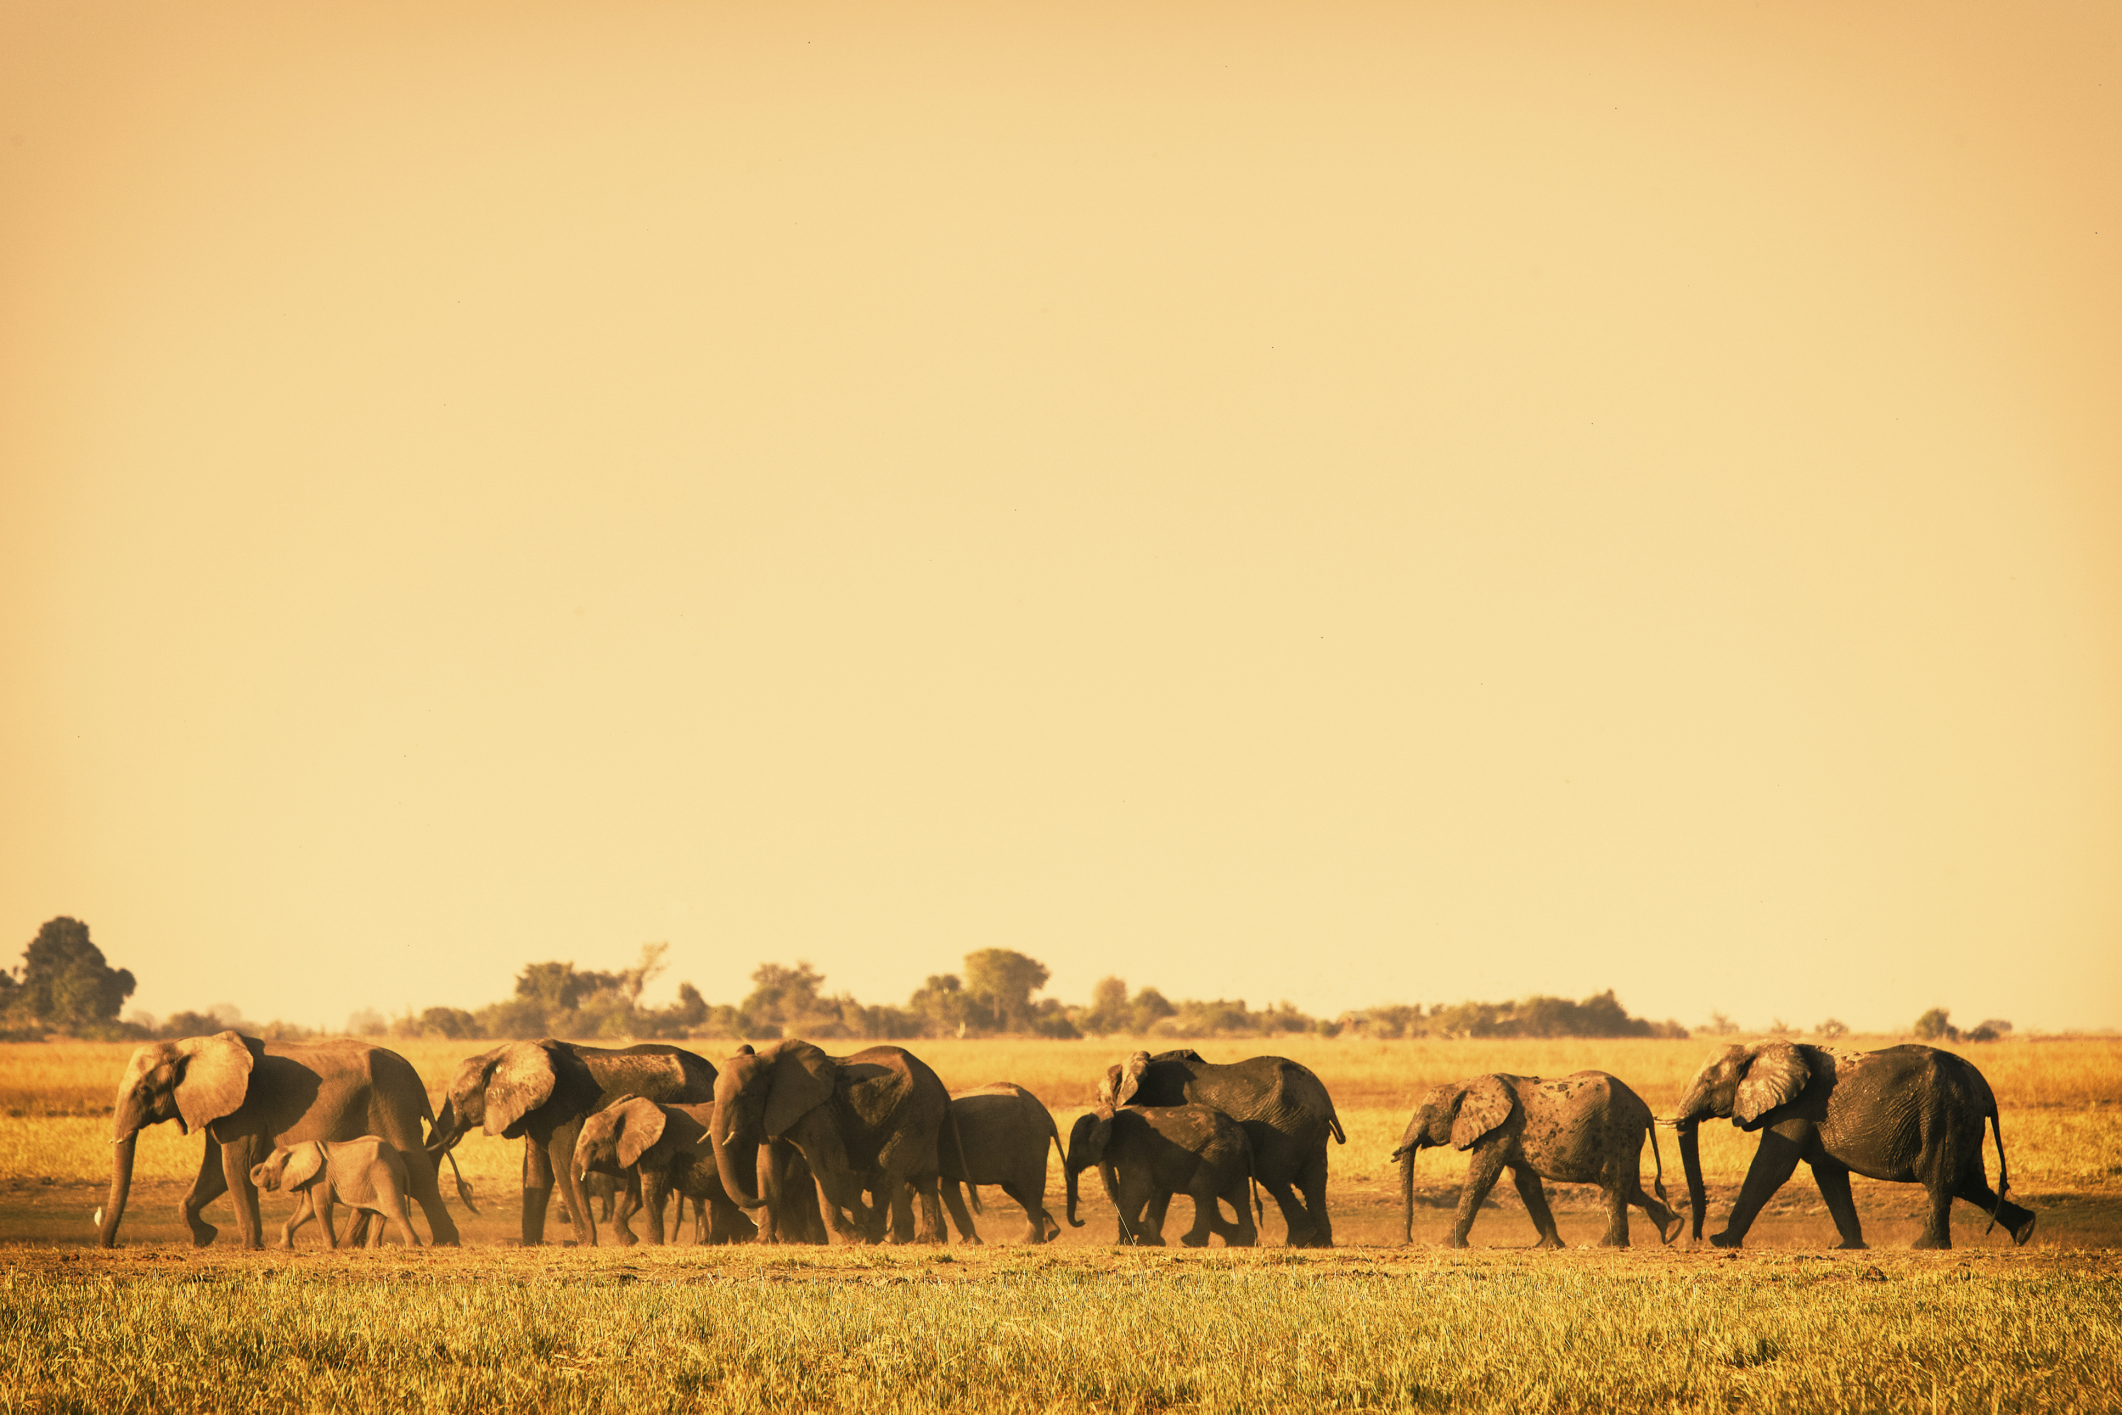 Elephants at Kruger National Park